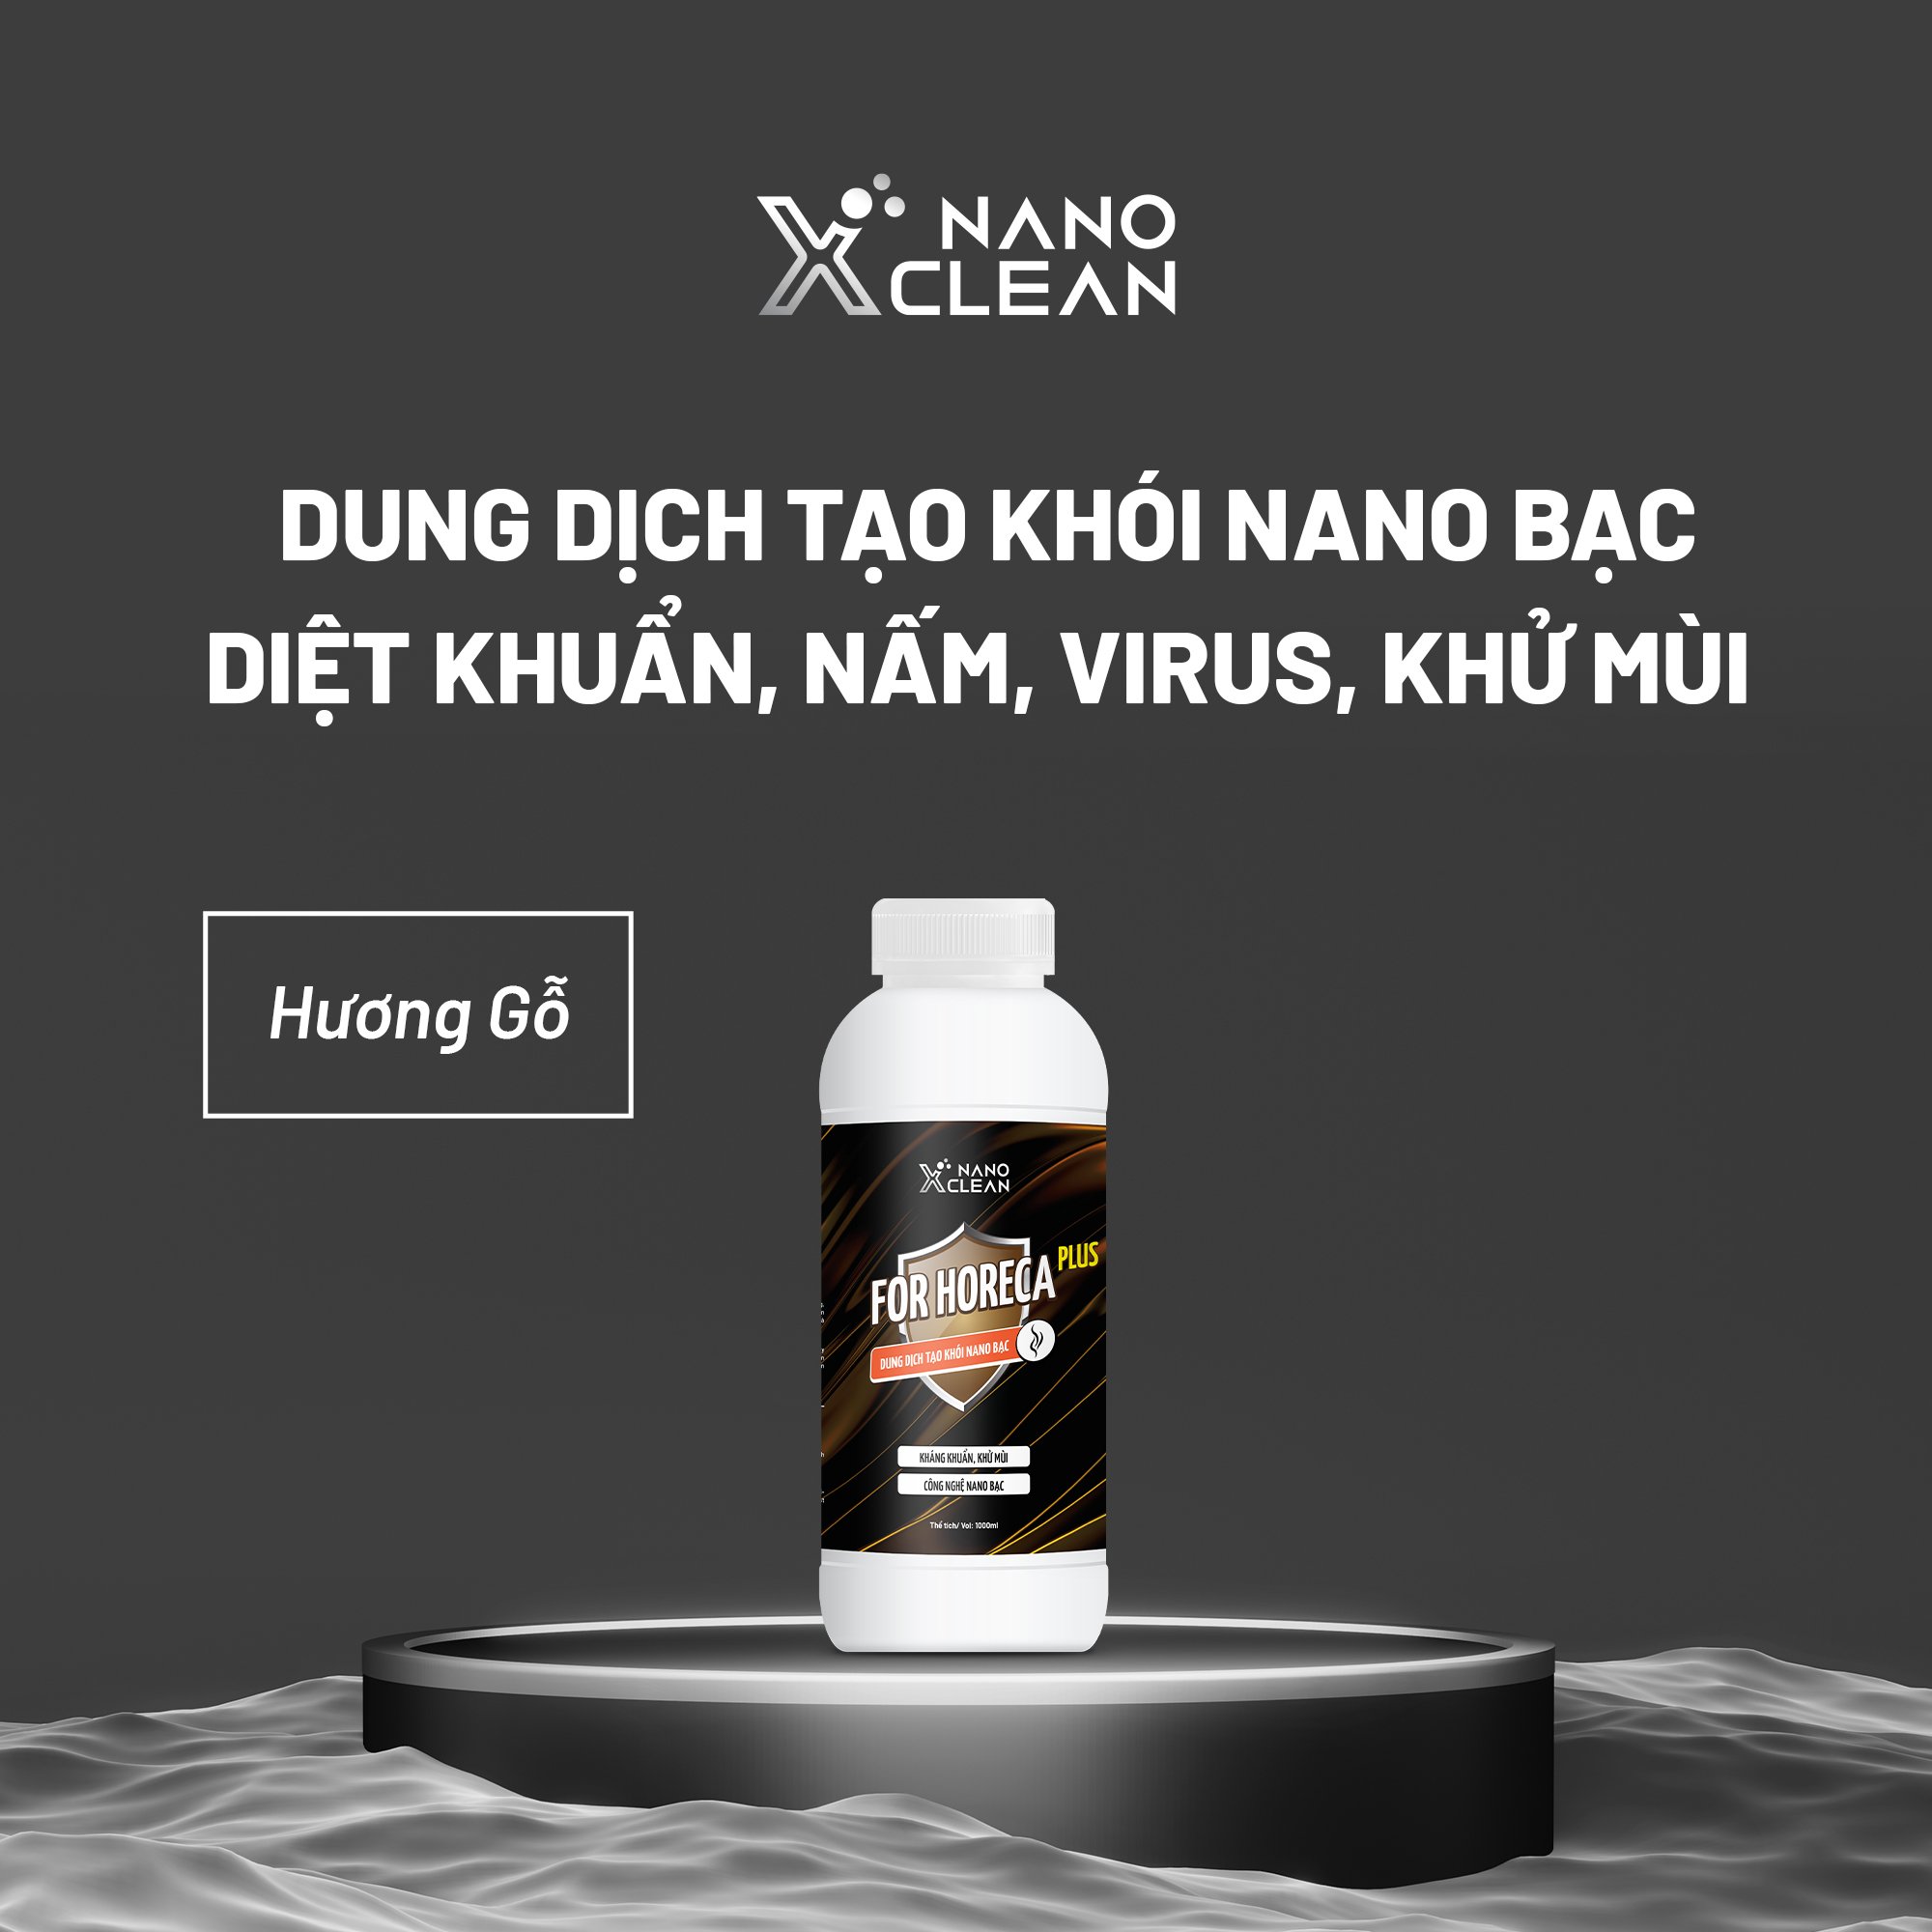 Dung Dịch Nano Bạc Tạo Khói, Phun Khói khử mùi ô tô Nano Xclean For Horeca Plus 5L/1L-Kháng Khuẩn, Khử Mùi Không Gian, Mùi Ẩm Mốc, Mùi Bếp